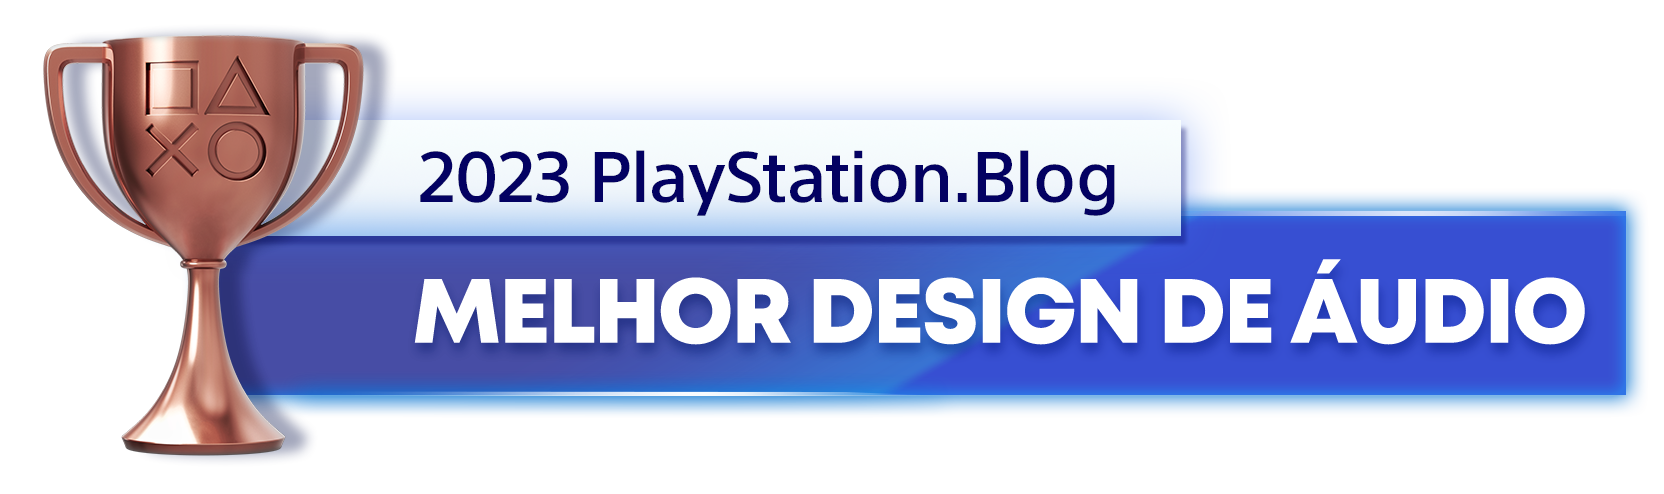  "Troféu de Bronze para o vencedor da categoria Melhor Design de Áudio de 2023 do PlayStation Blog "